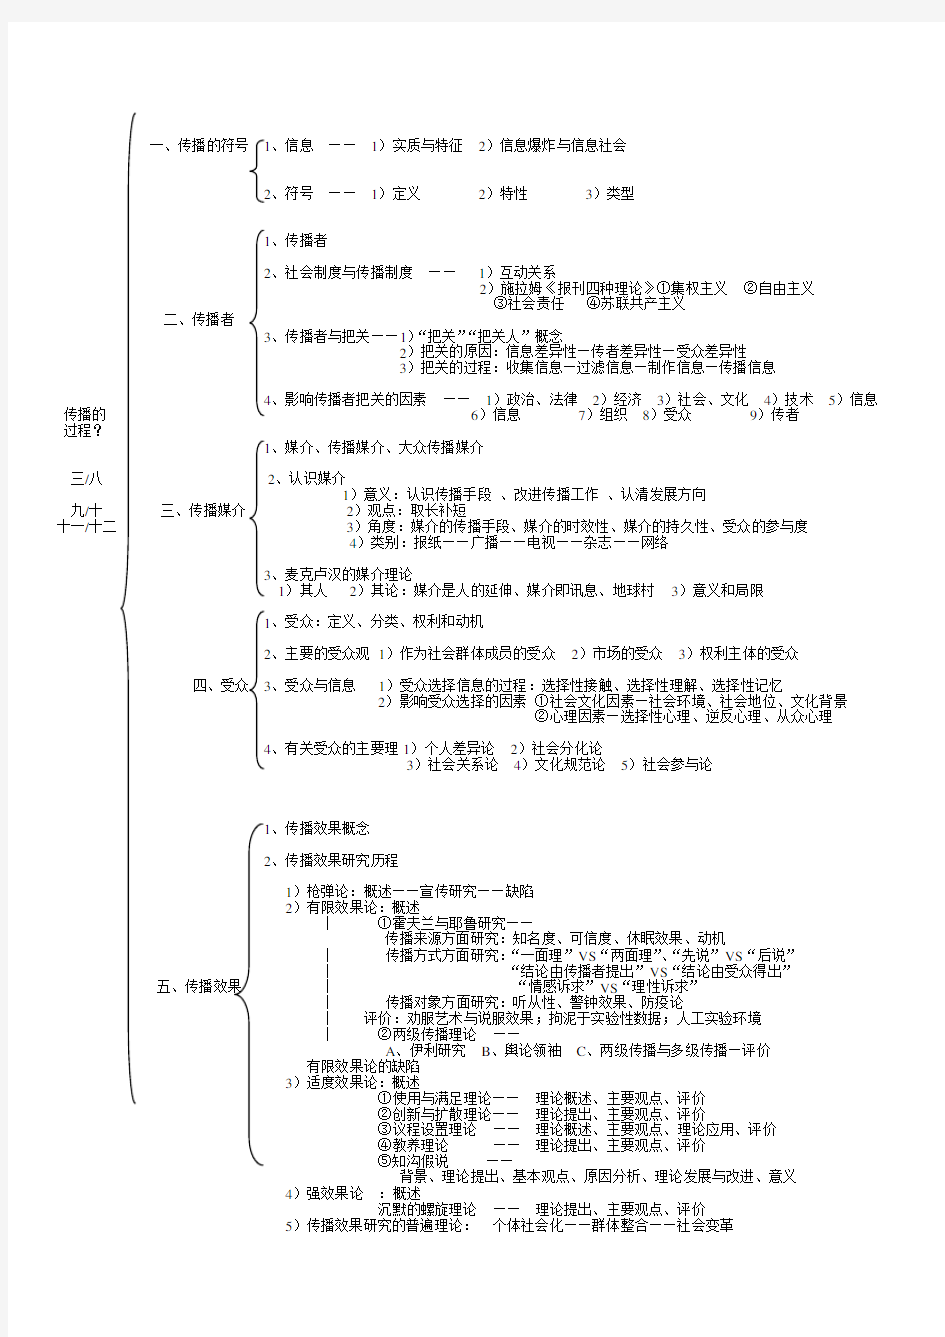 郭庆光版-传播学教程框架图(整理版)